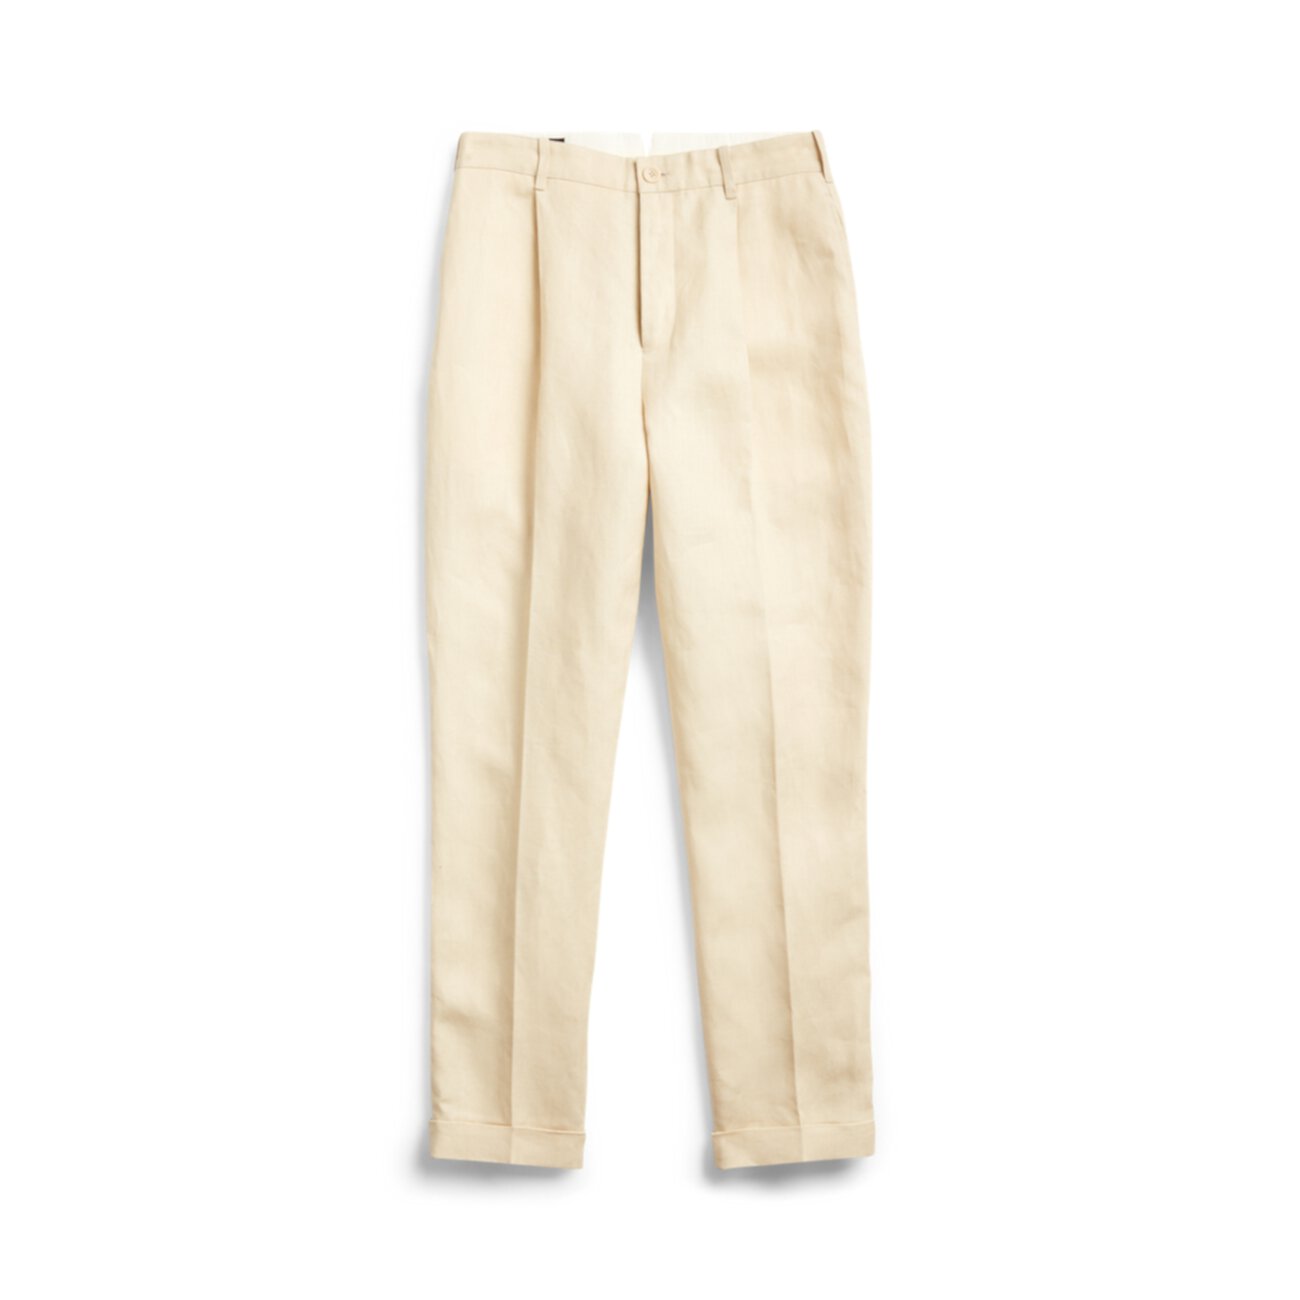 Узкие плиссированные льняные брюки Ralph Lauren